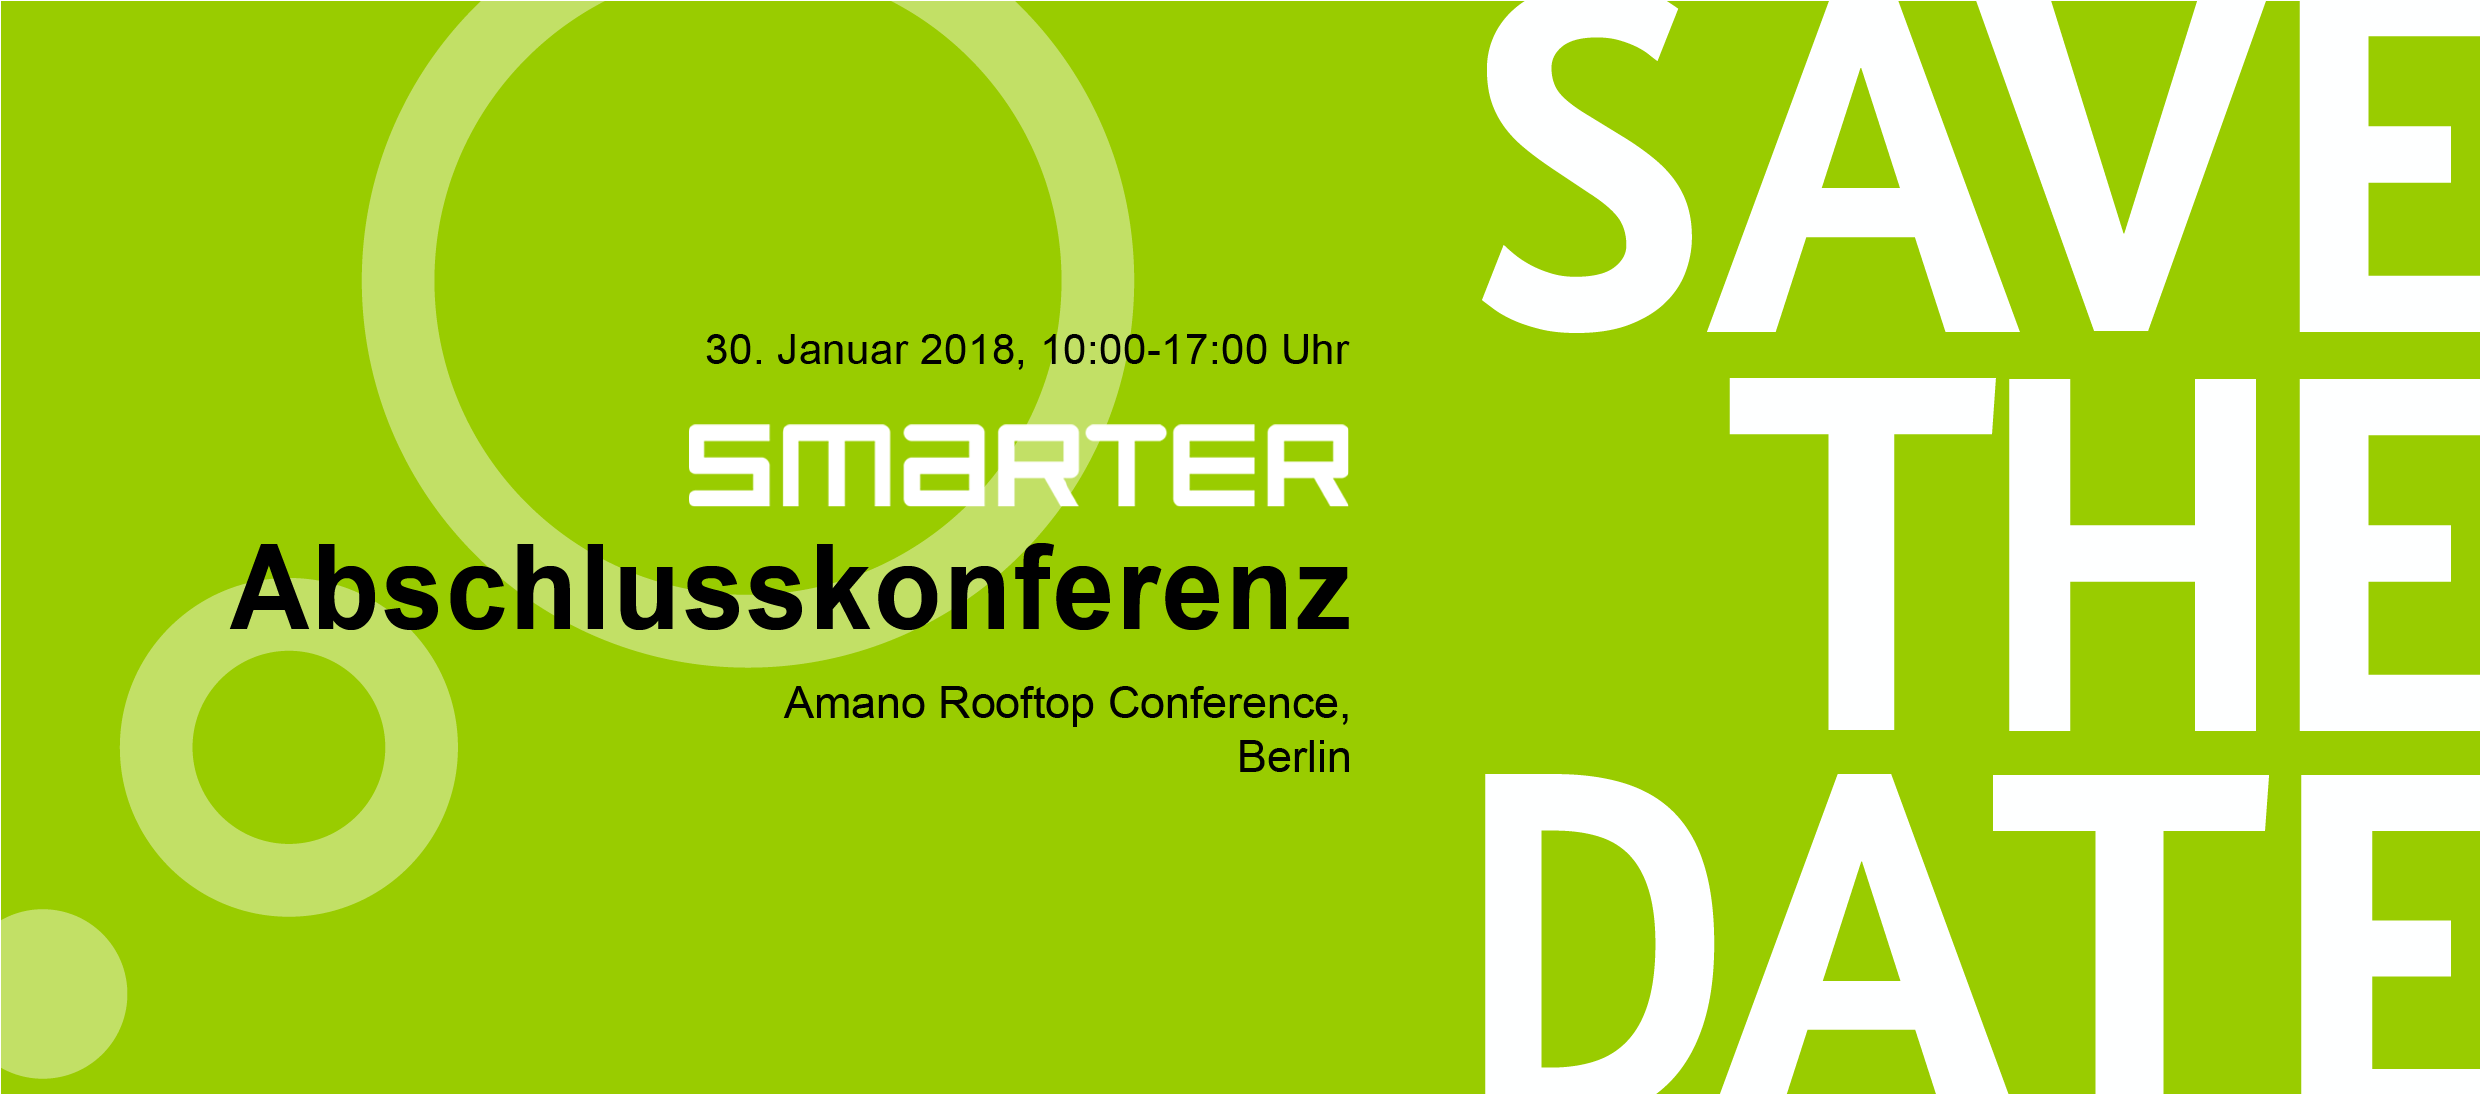 Save the date - Abschlusskonferenz am 30.01.2018